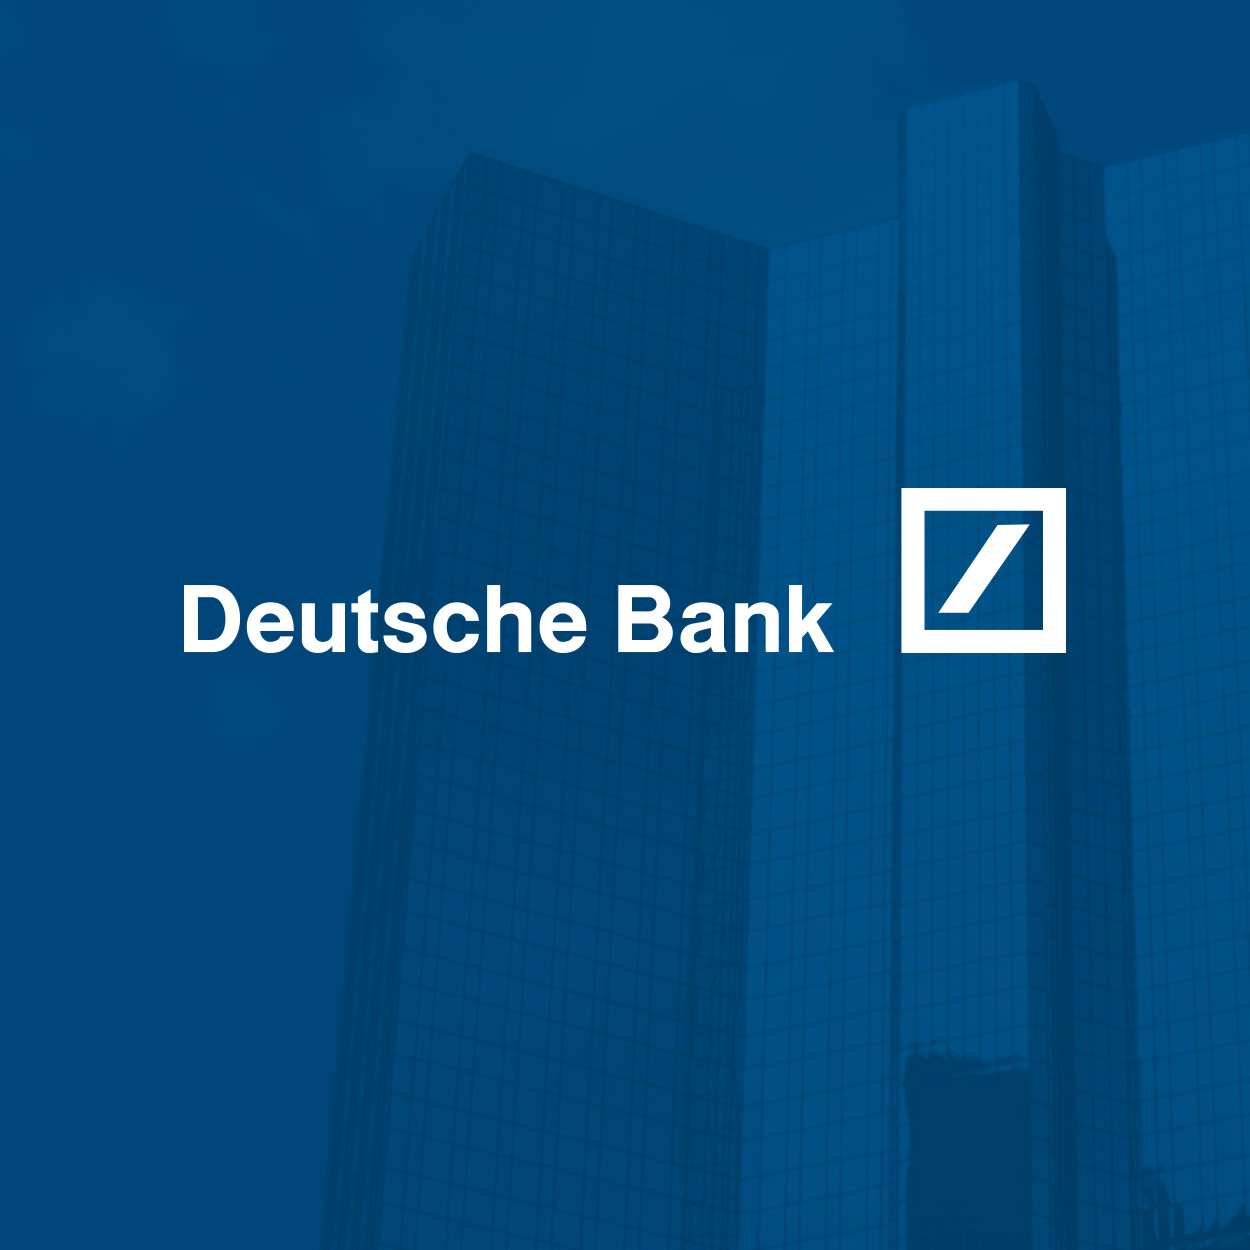 deutschebank_feature_1250